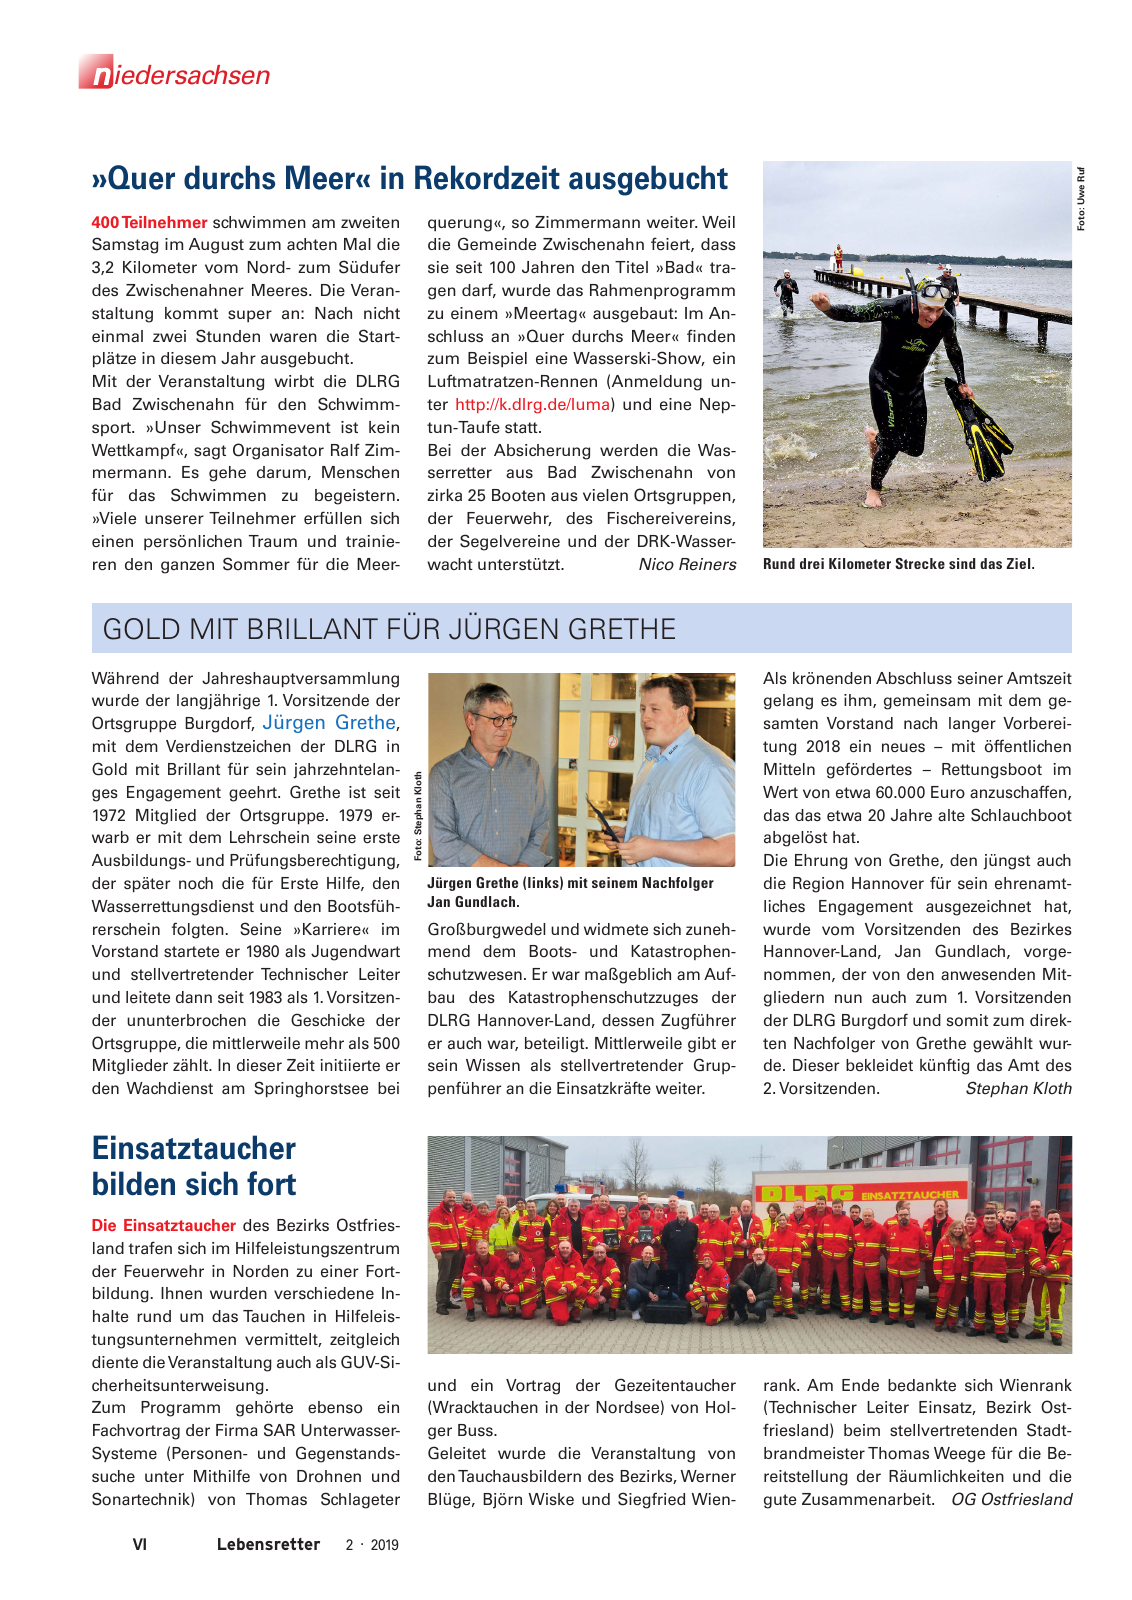 Vorschau Lebensretter 2/2019 - Niedersachsen Regionalausgabe Seite 8